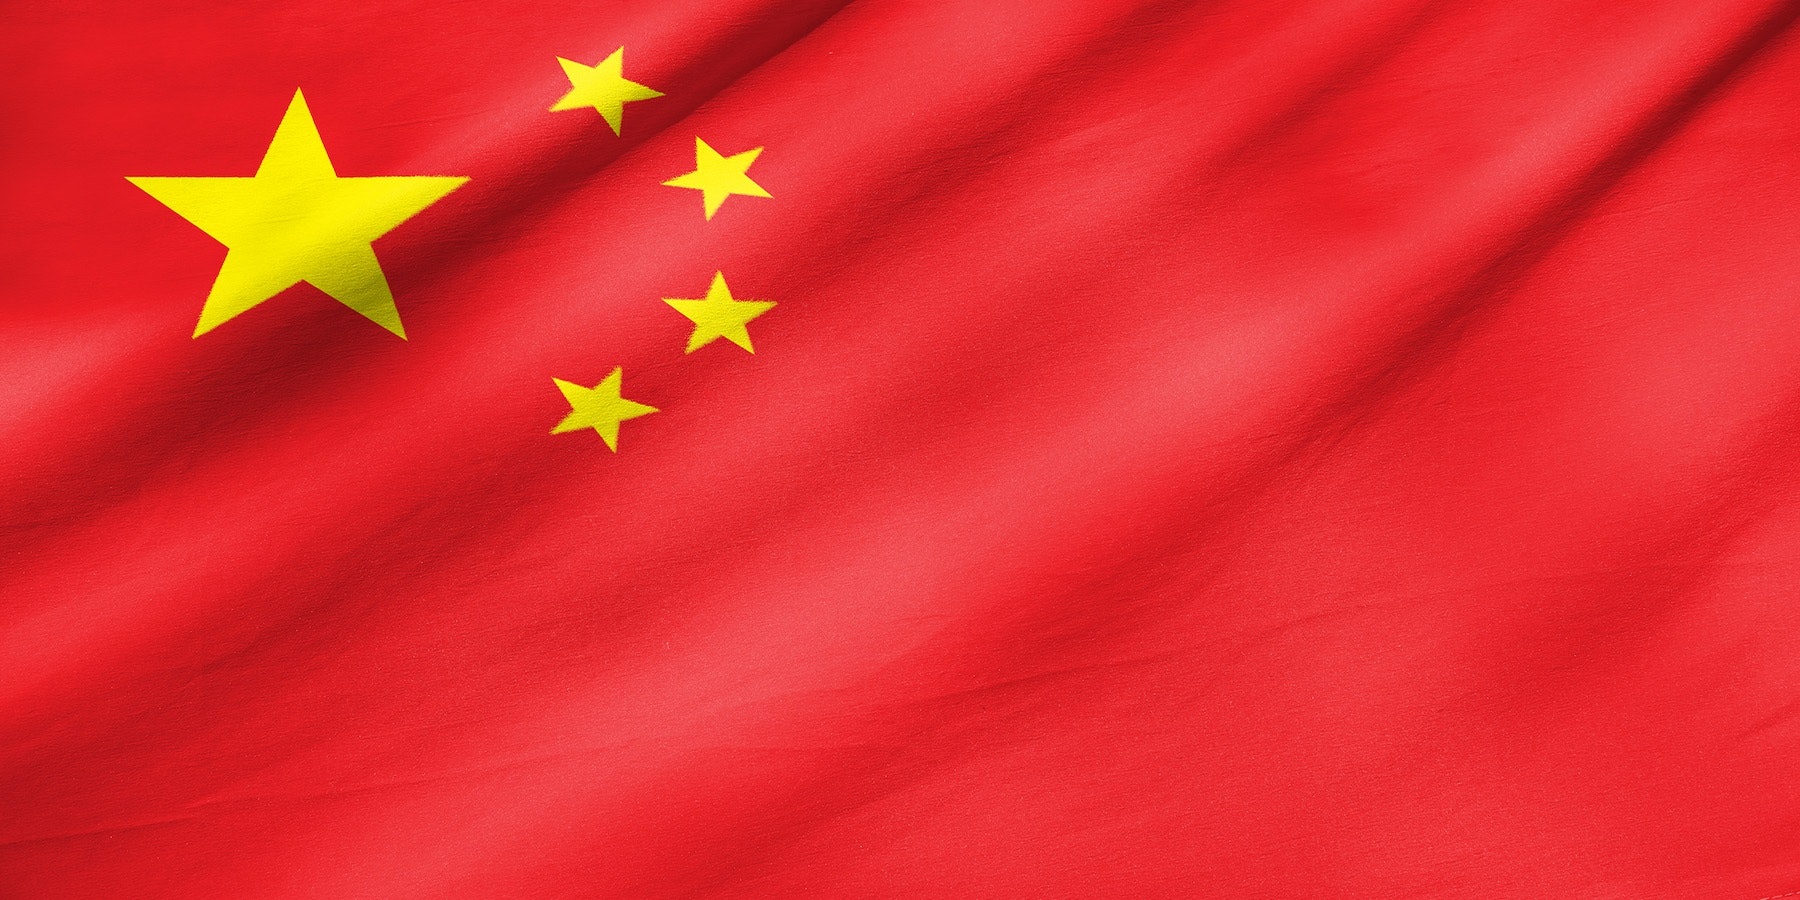 नेपालीहरूलाई अब चीन जाँदा भिसा शुल्क नलाग्ने